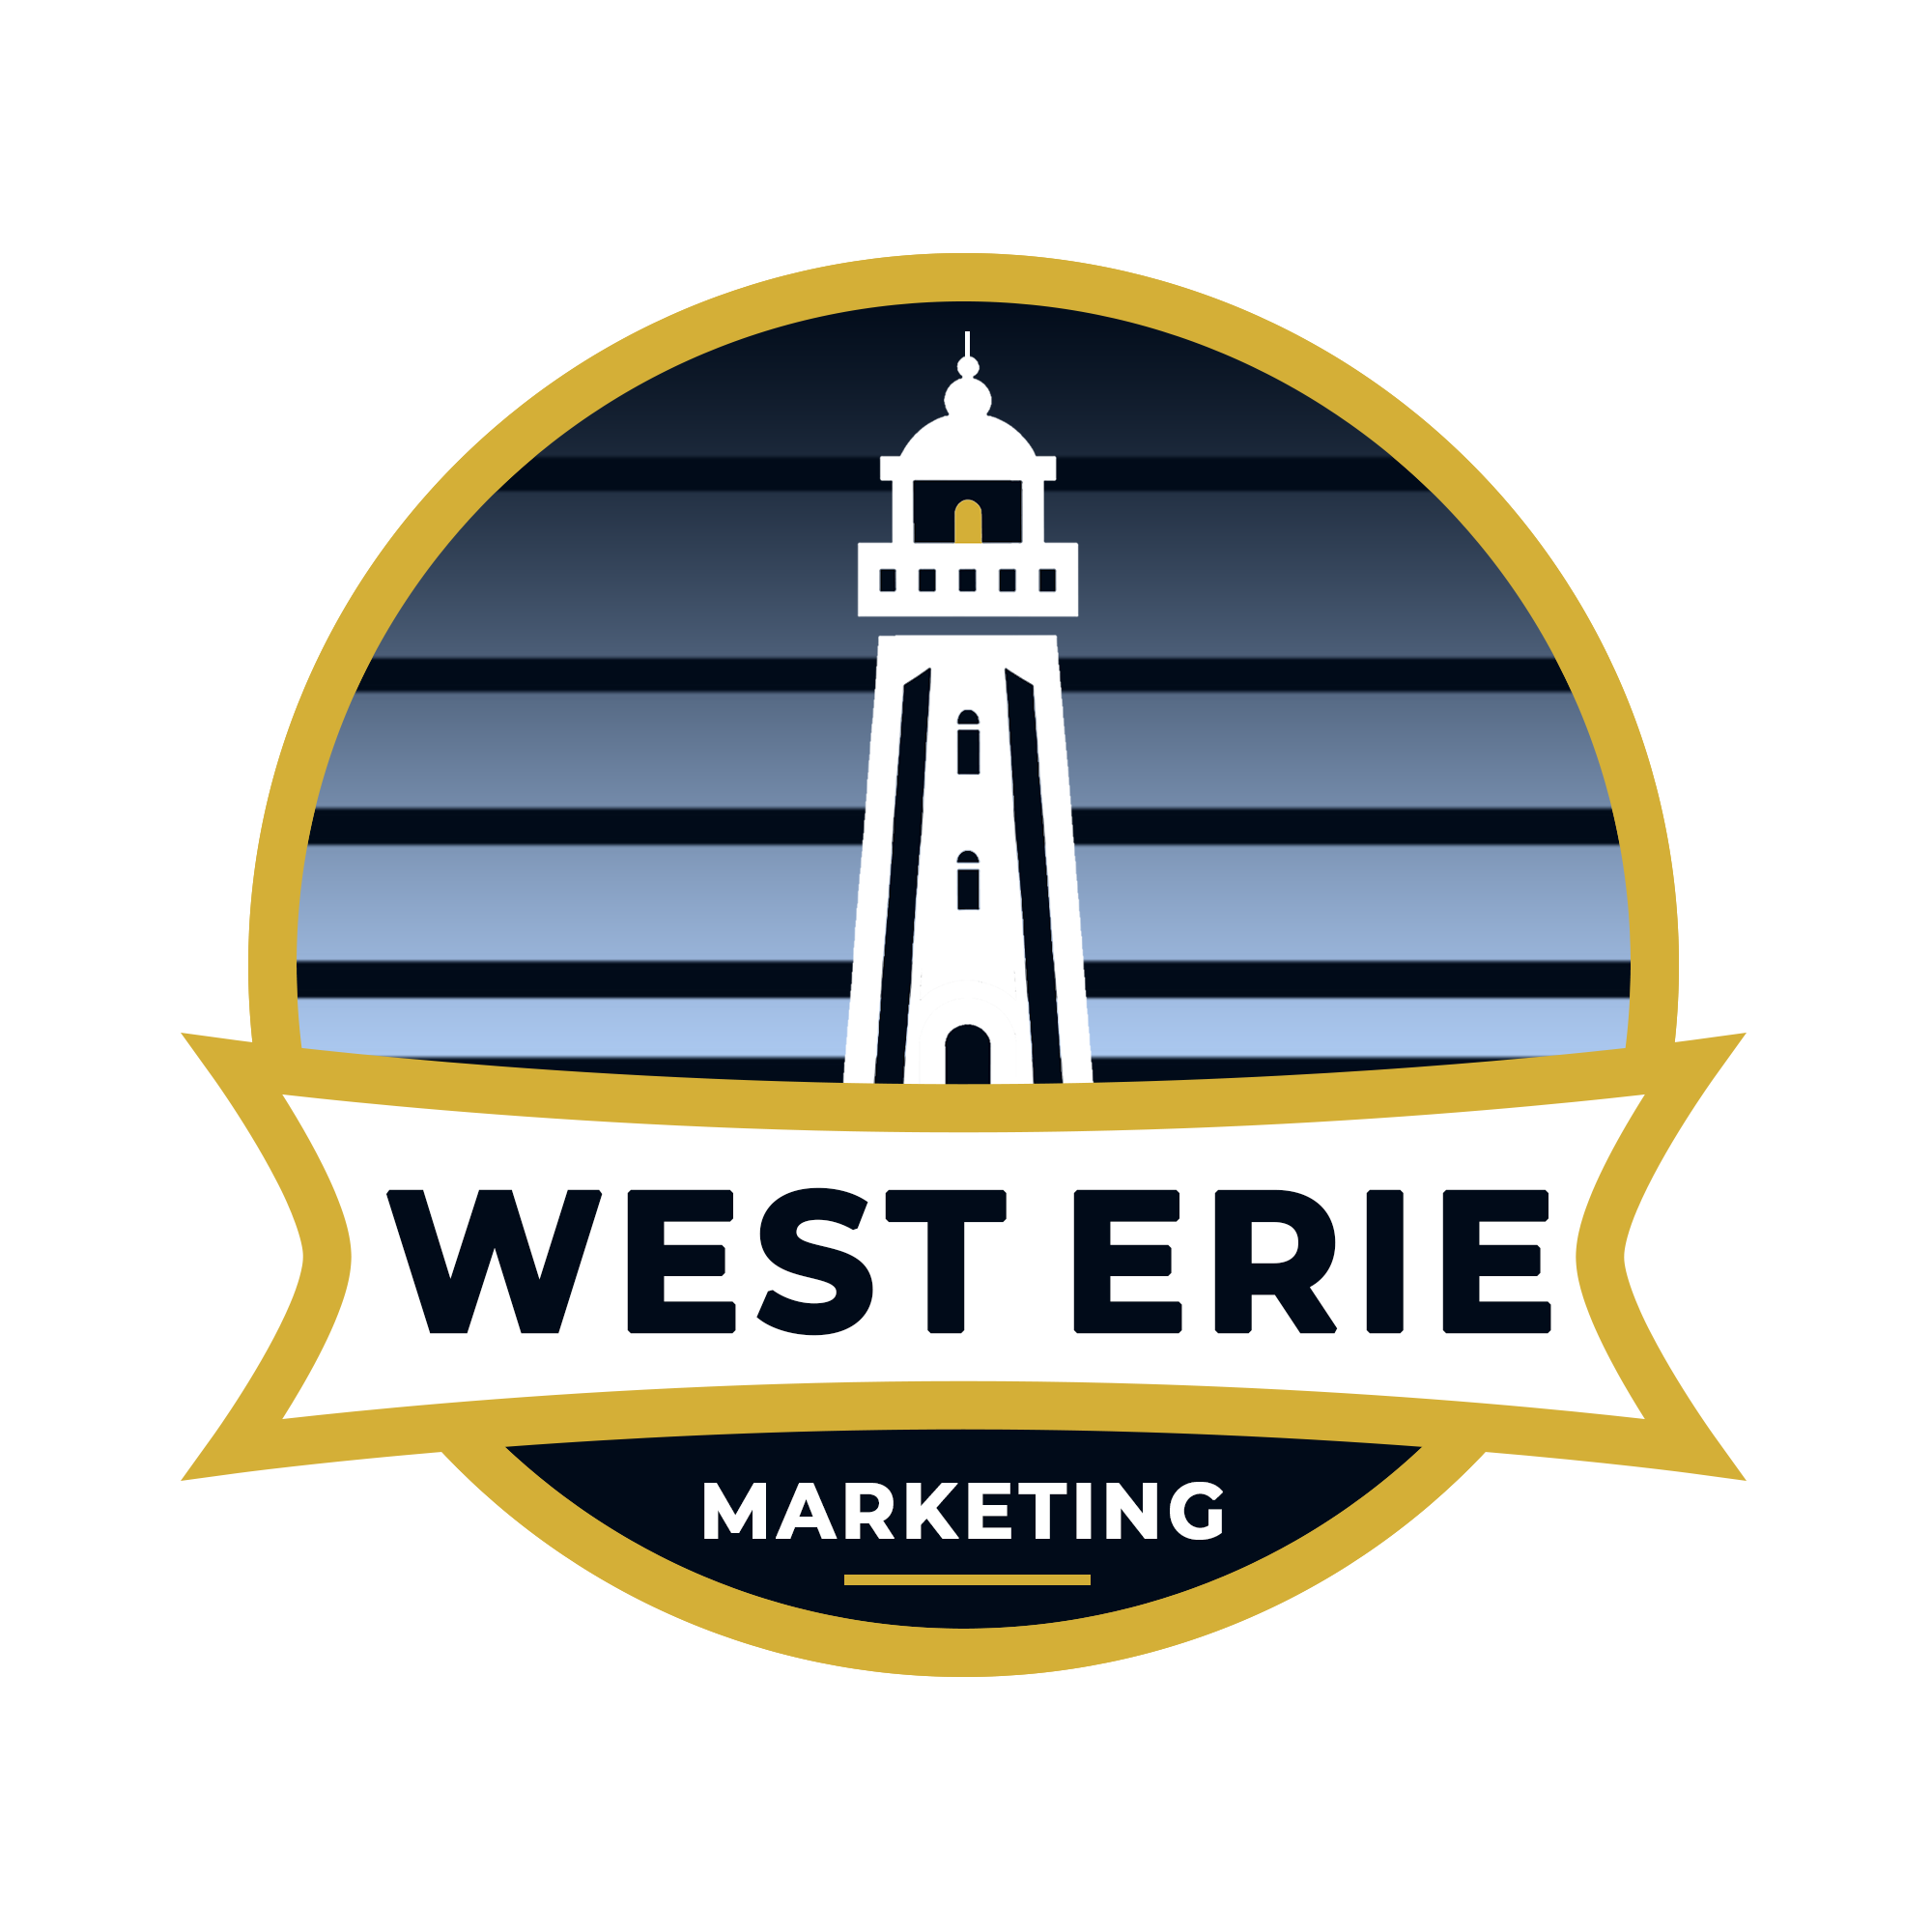 West Erie Marketing